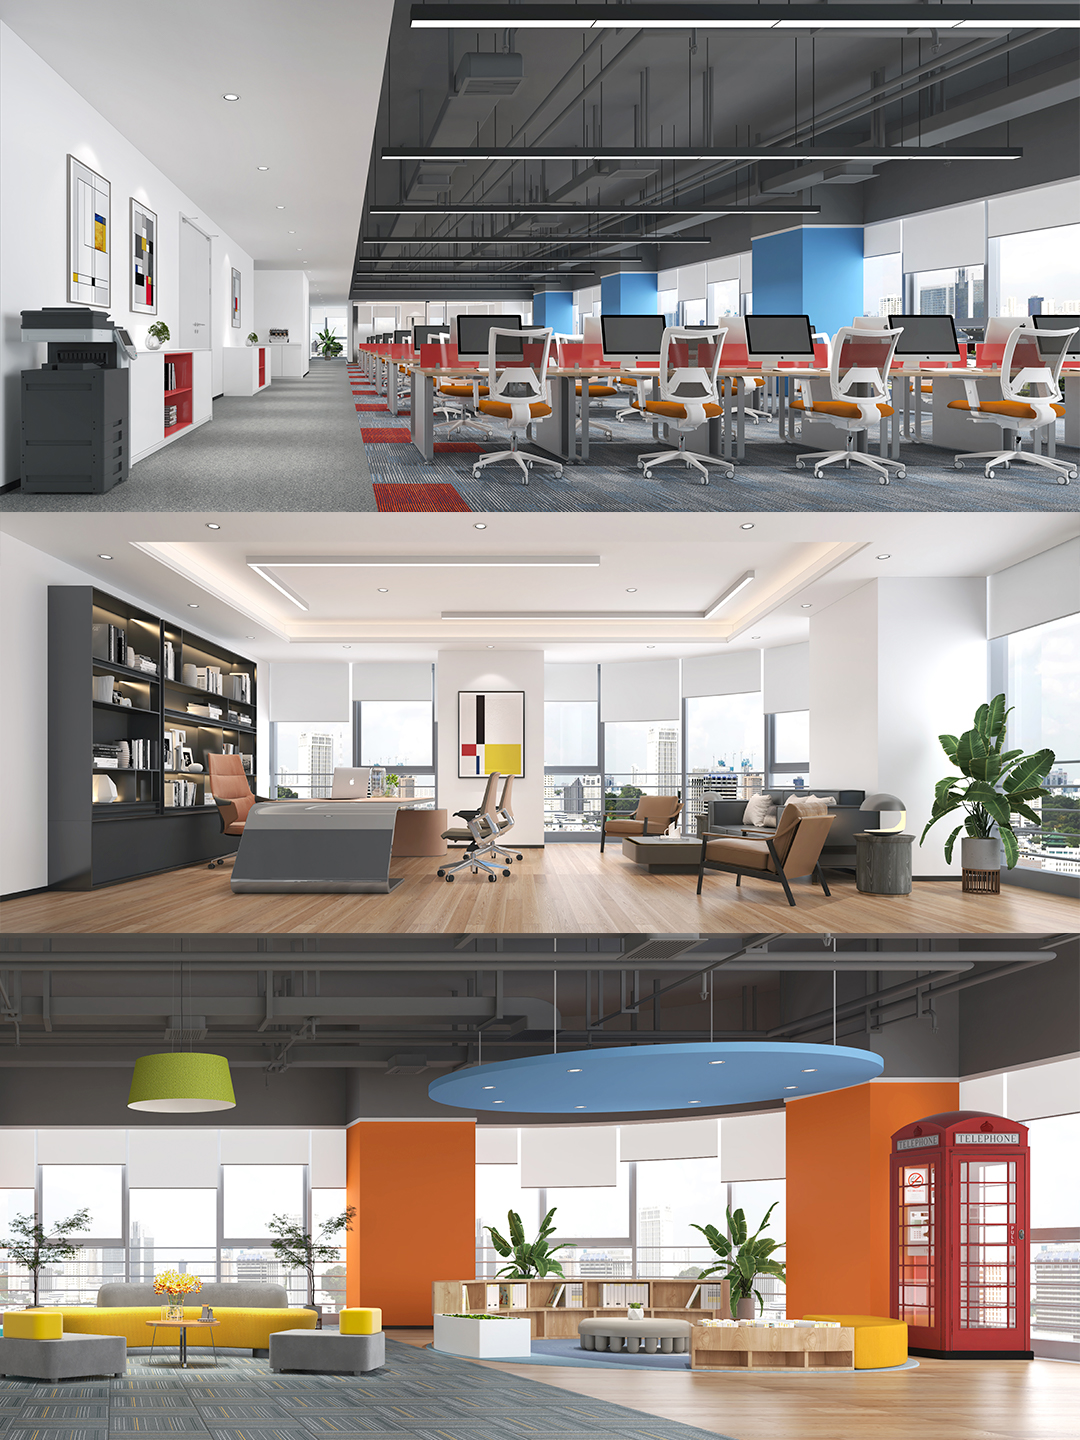 光明办公室装修公司 | 办公室装修设计 | 打造高端、科技、创新办公室